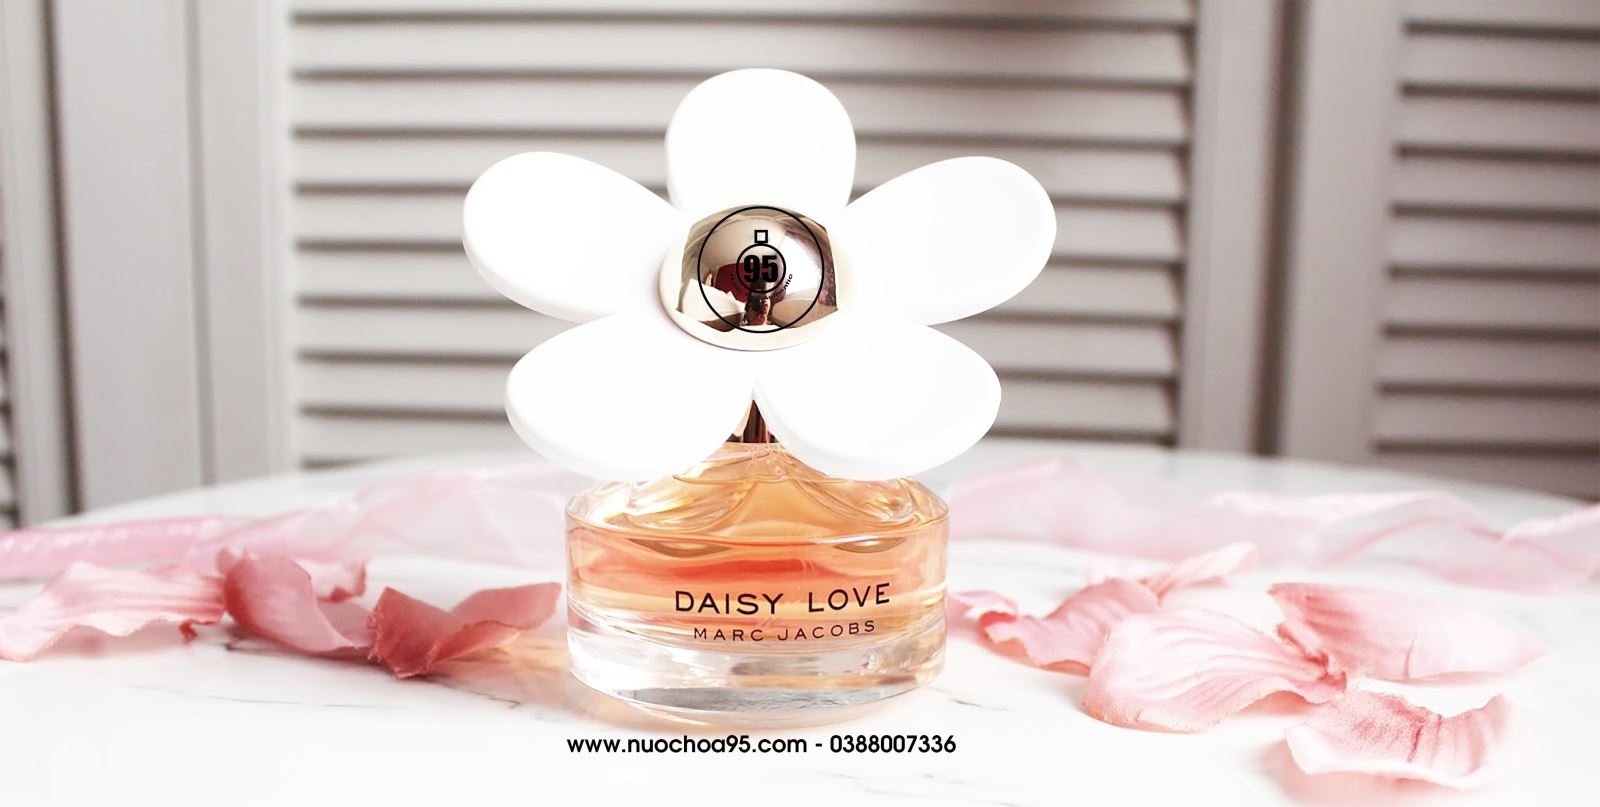 Nước hoa Marc Jacobs Daisy Love - Ảnh 1